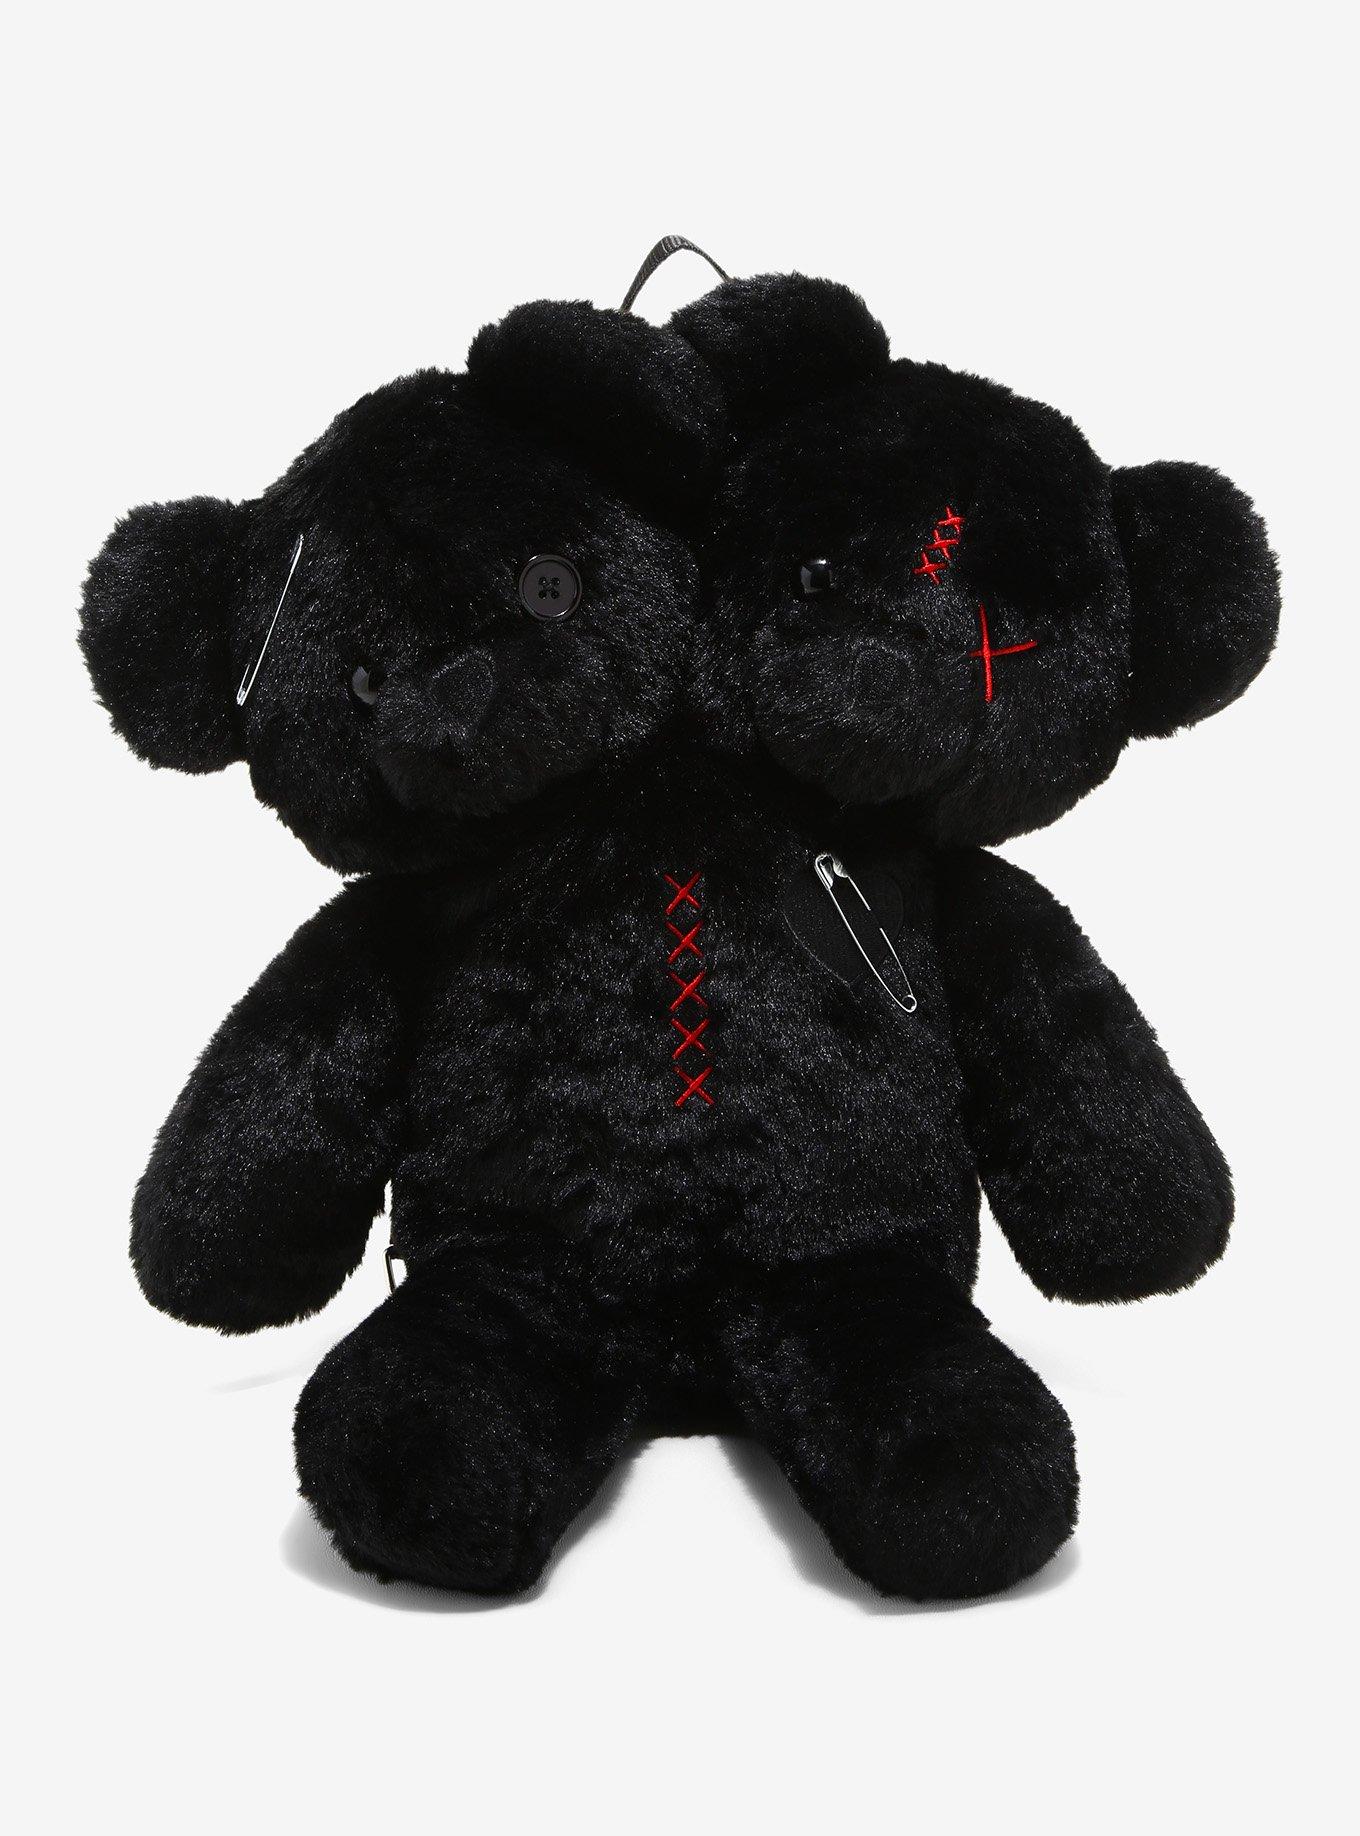 Stylish Plush Backpack Black Bear